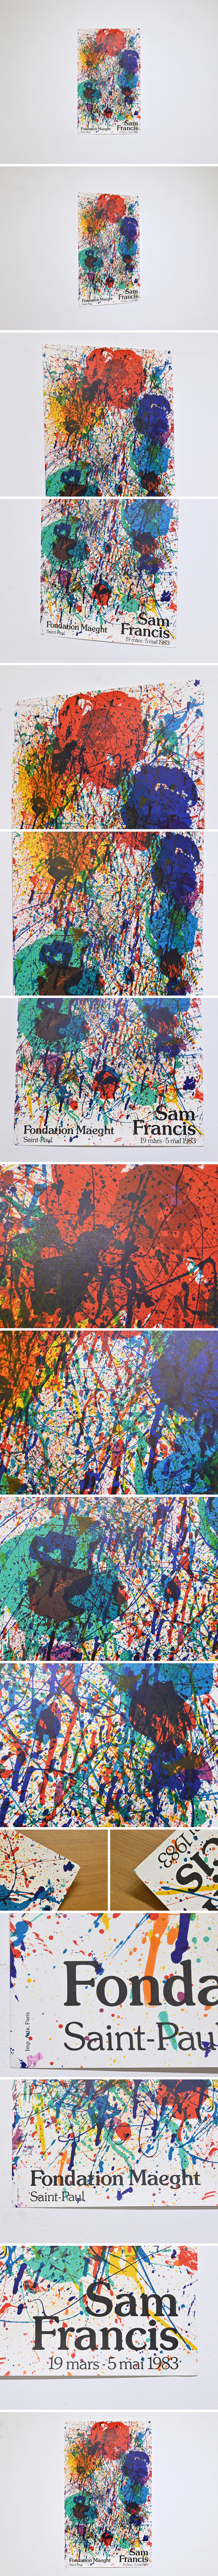 特価格安サム・フランシス リトグラフポスター 1983年 オリジナル 南仏 マーグ財団美術館/現代美術 抽象表現主義 マークロスコ ジャクソンポロック 石版画、リトグラフ